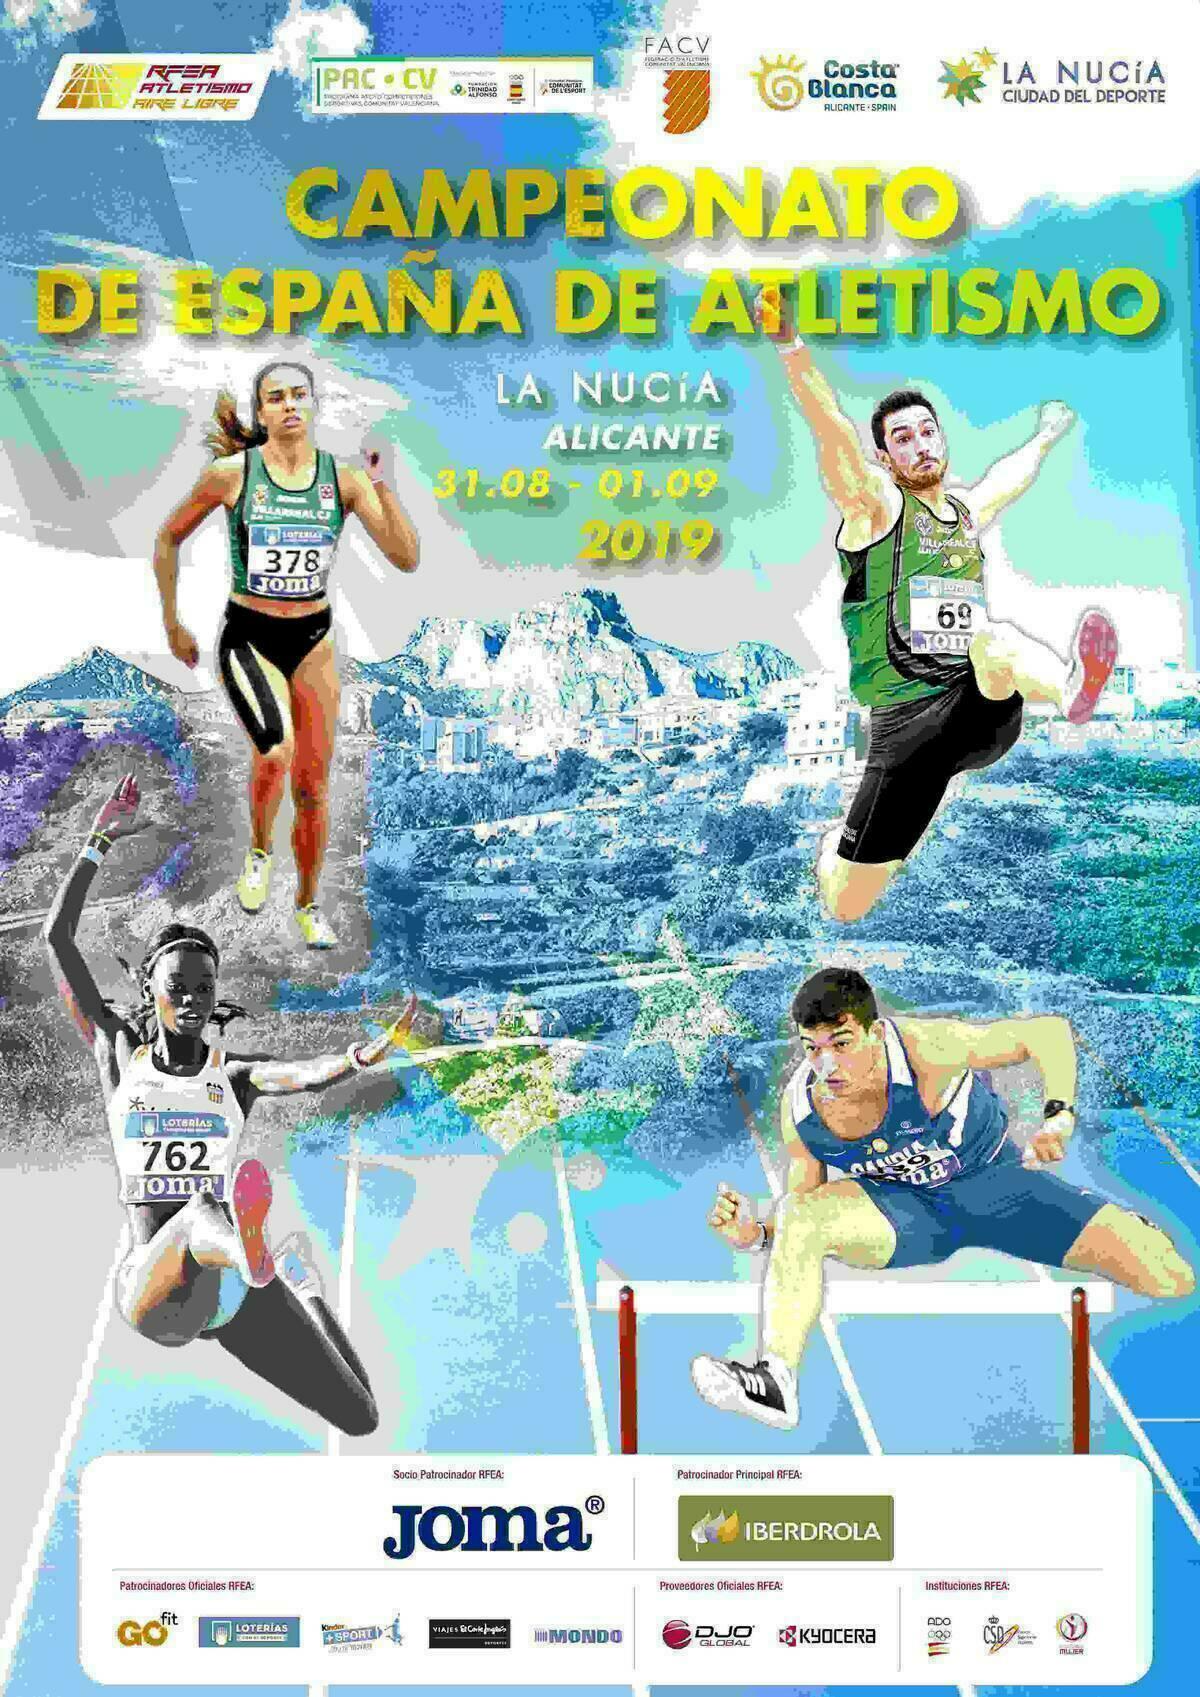 Abonos y Entradas para el Campeonato de España de Atletismo